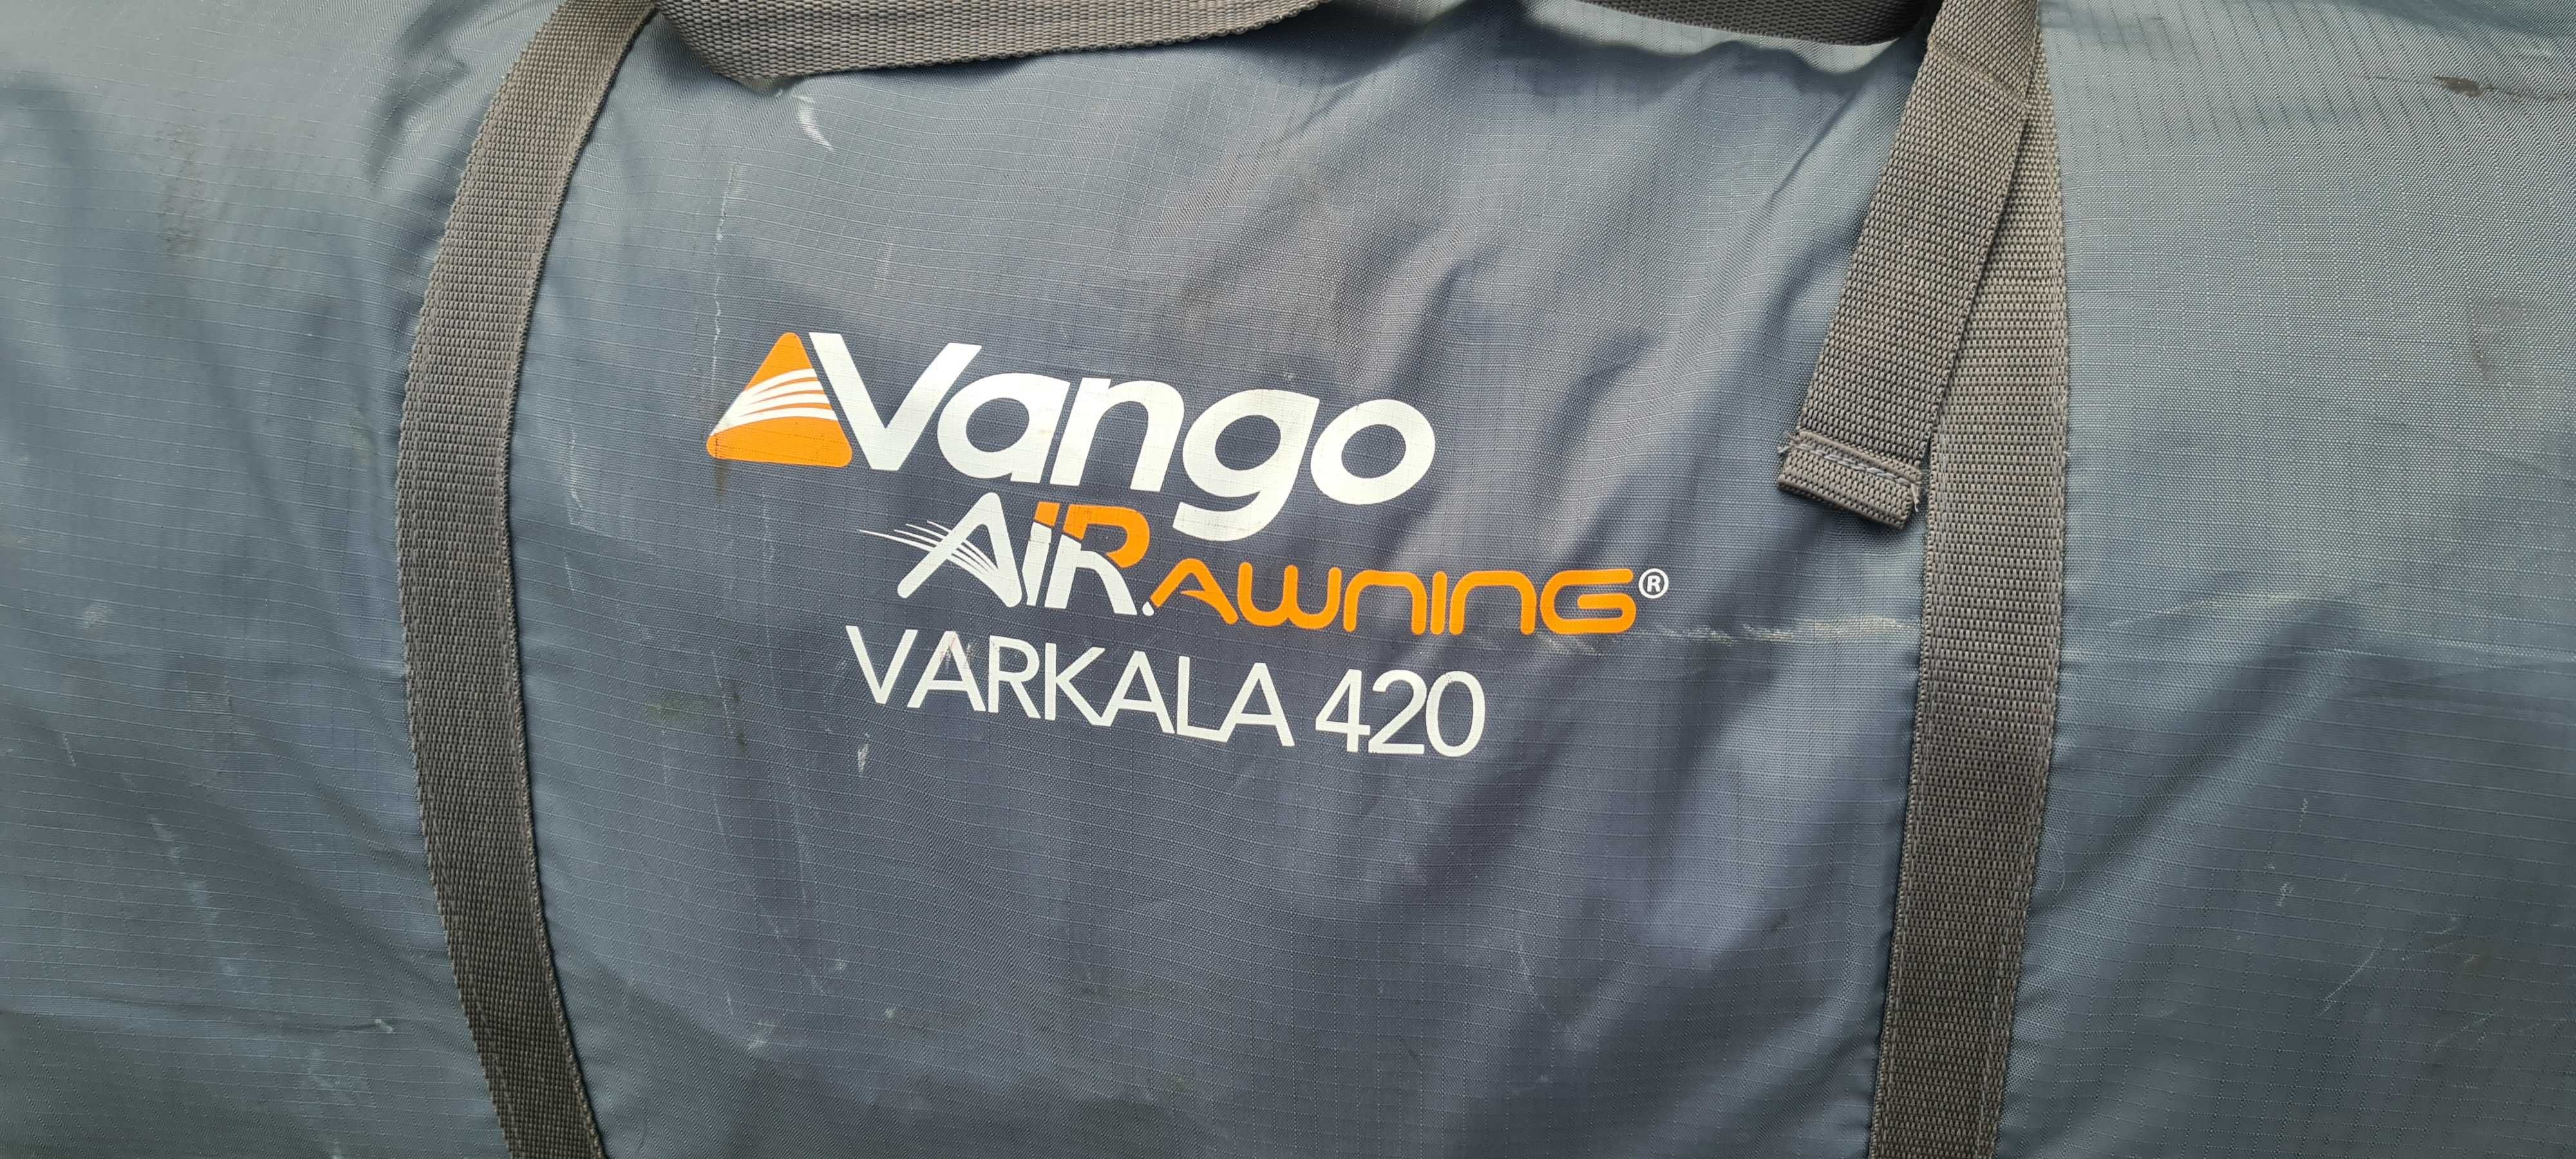 Cort rulota  gonflabil  Vango  Varkala 420   Air Awning